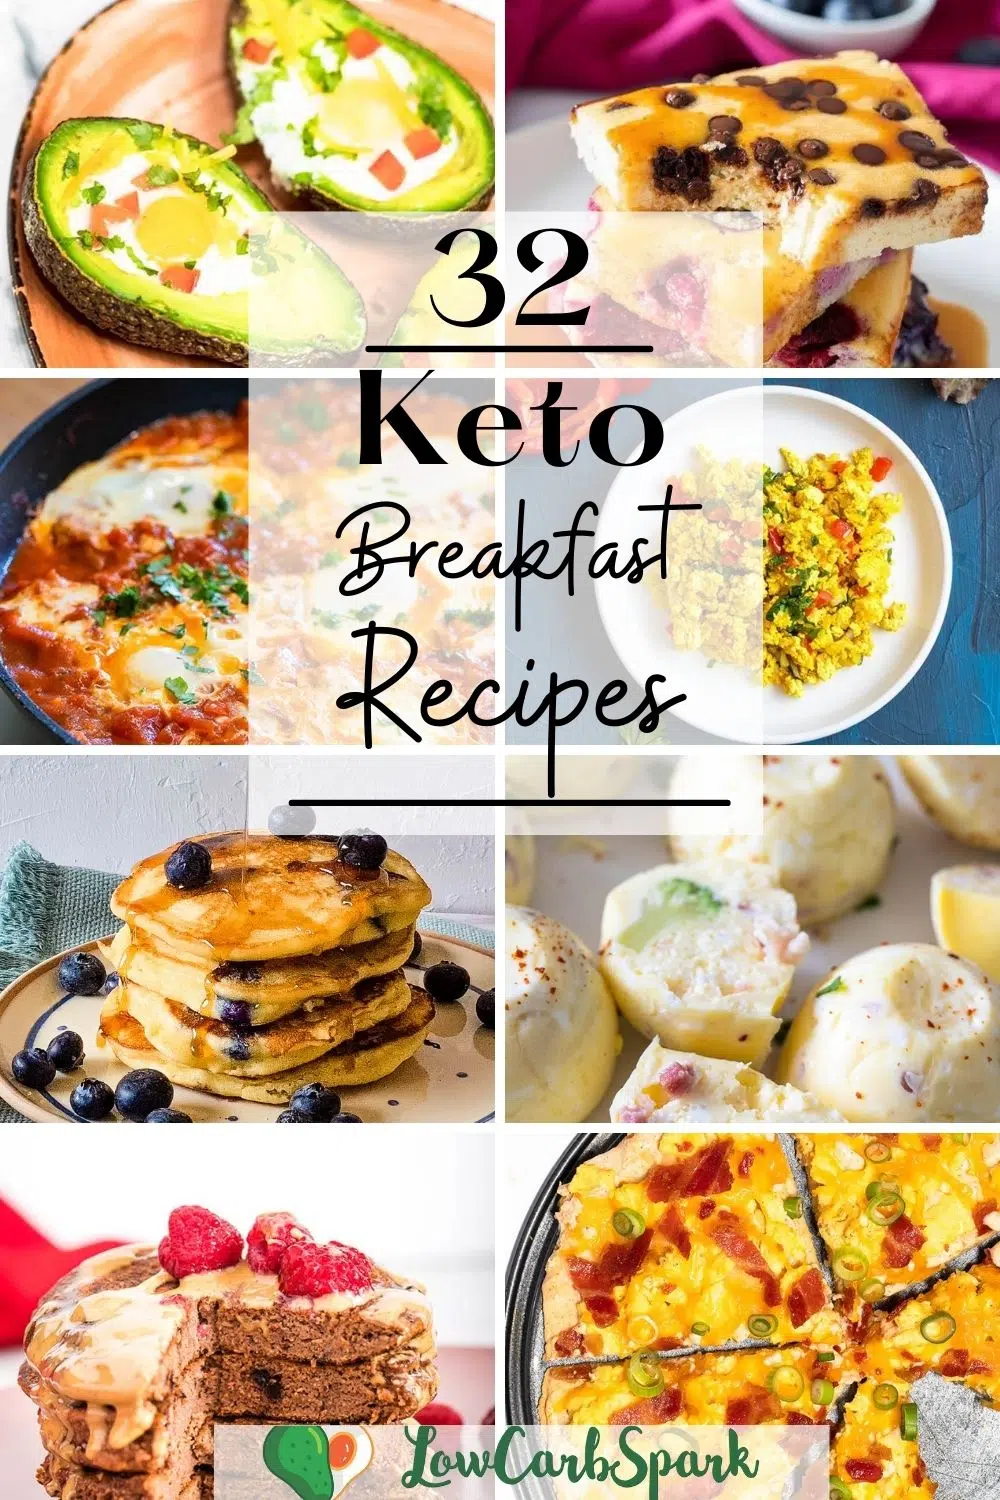 30+ Keto Breakfast Recipes